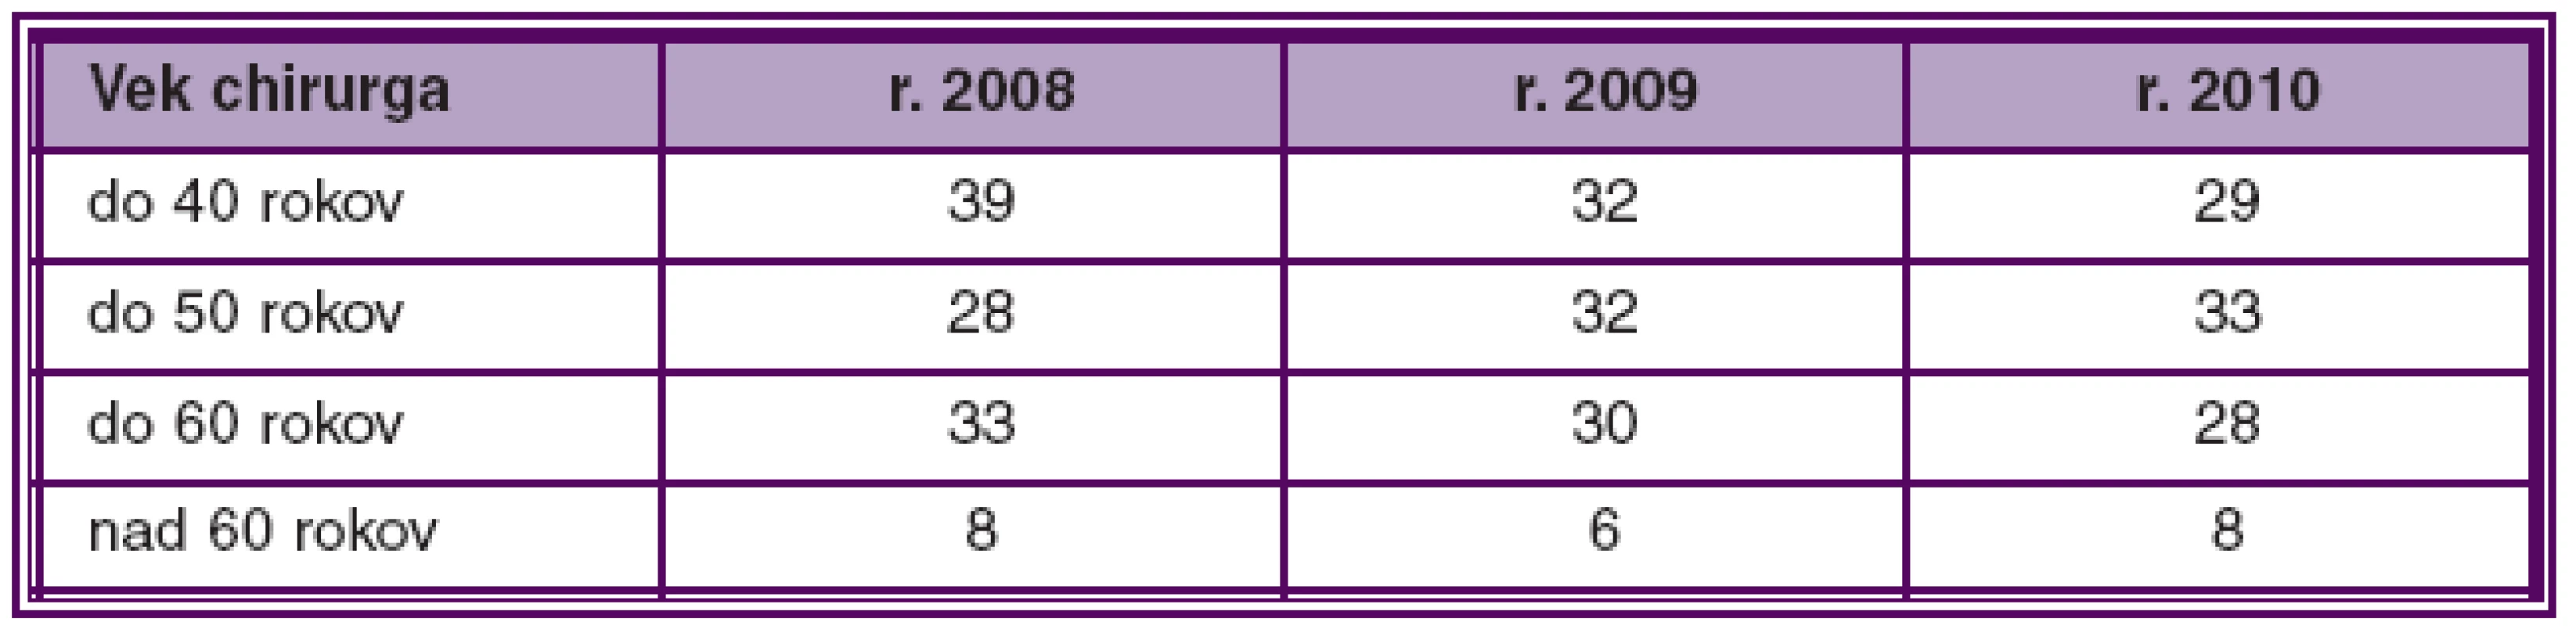 Počet kataraktových chirurgov v SR v jednotlivých vekových kategóriách a rokoch